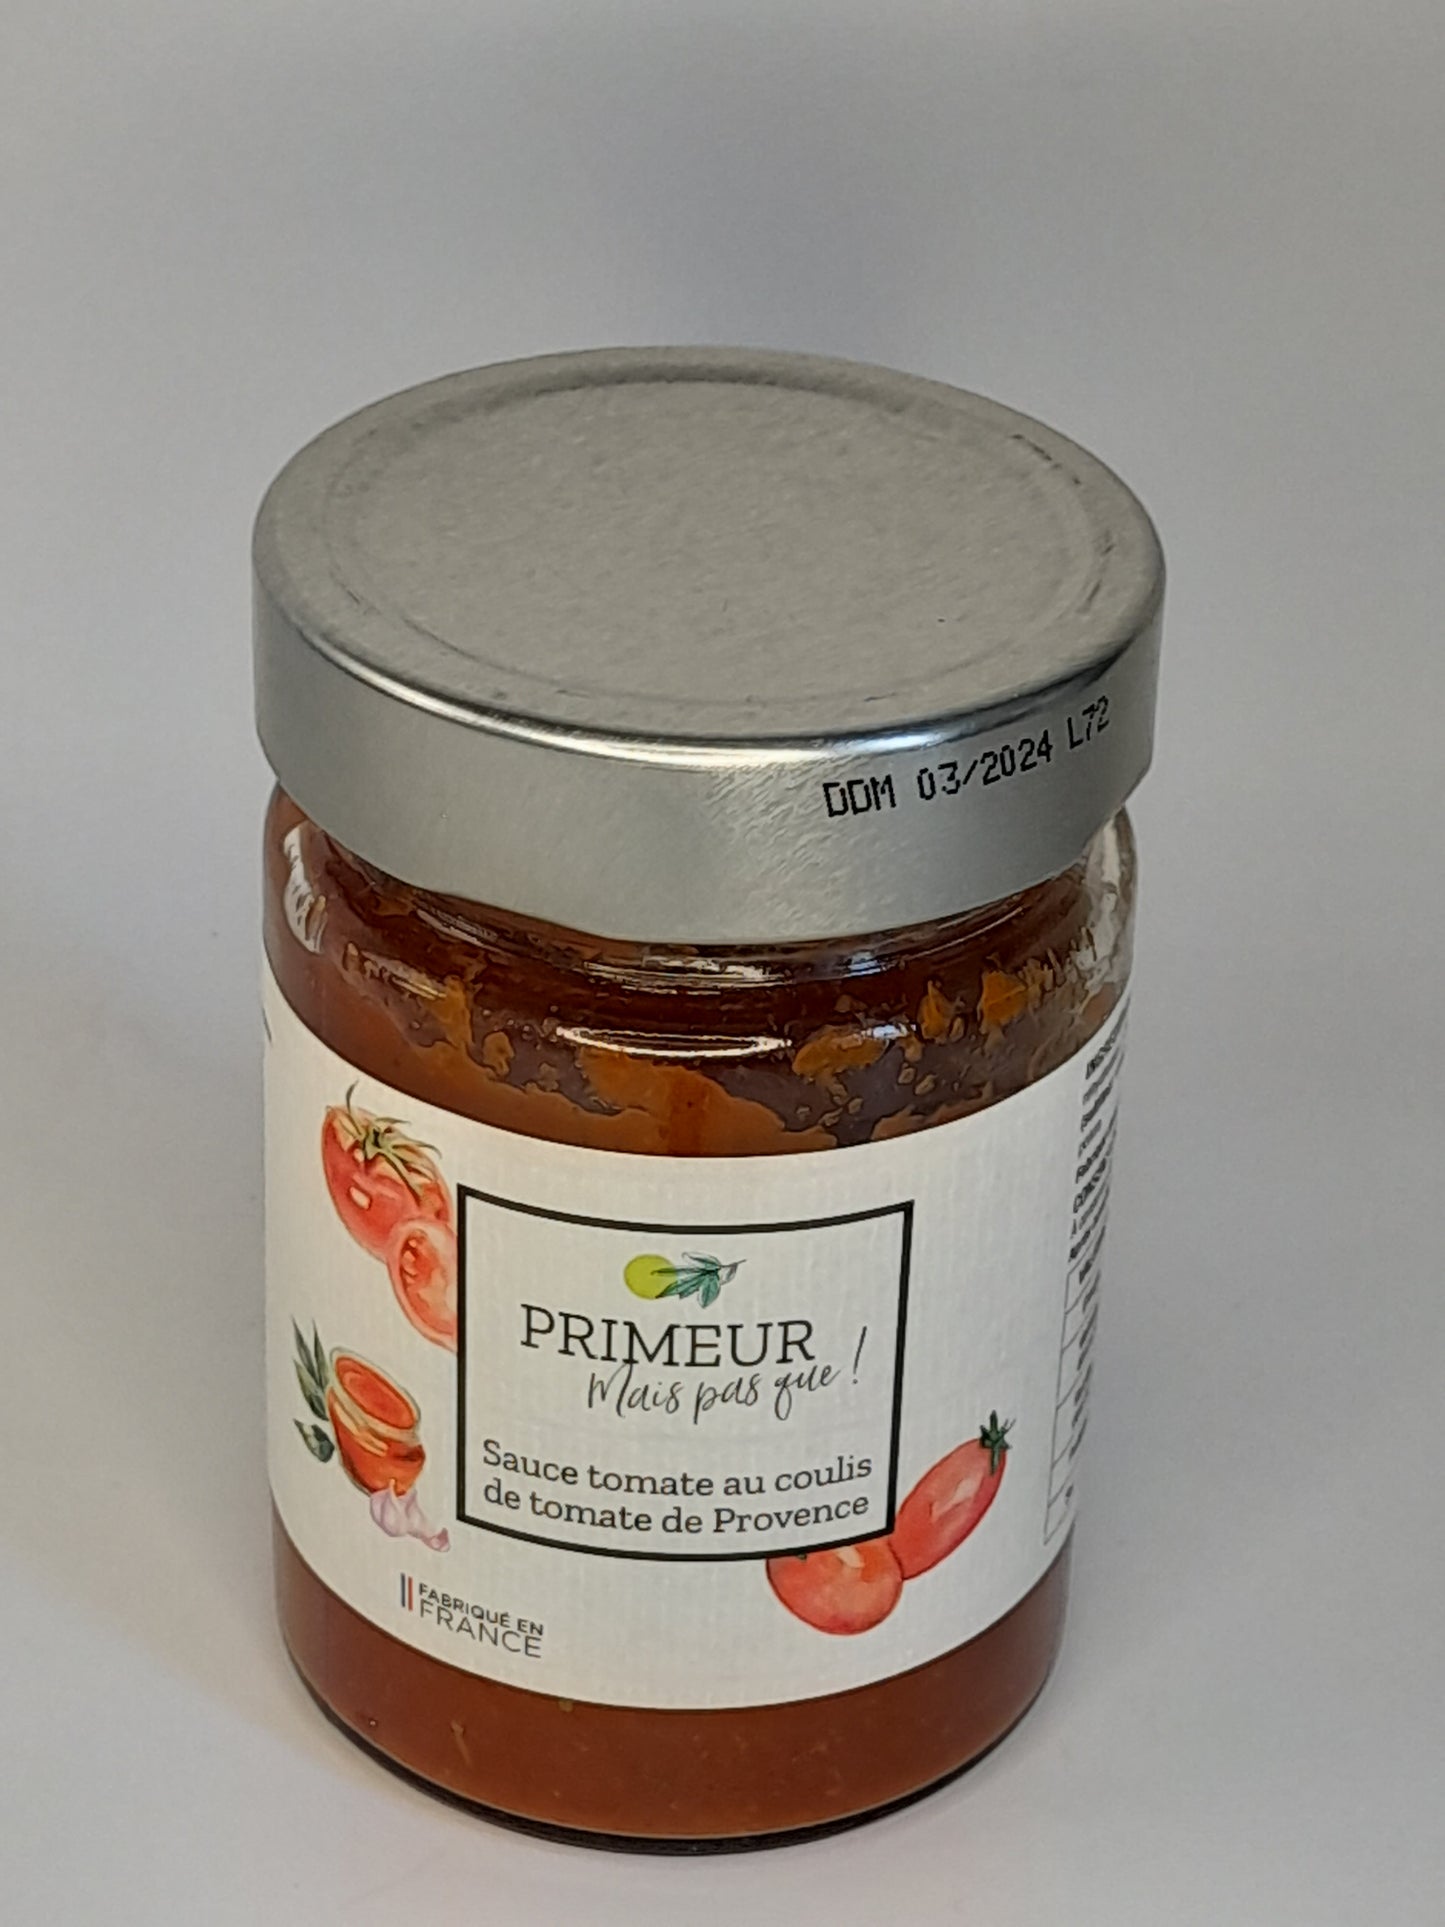 Sauce tomate au coulis de tomate de Provence. 300G